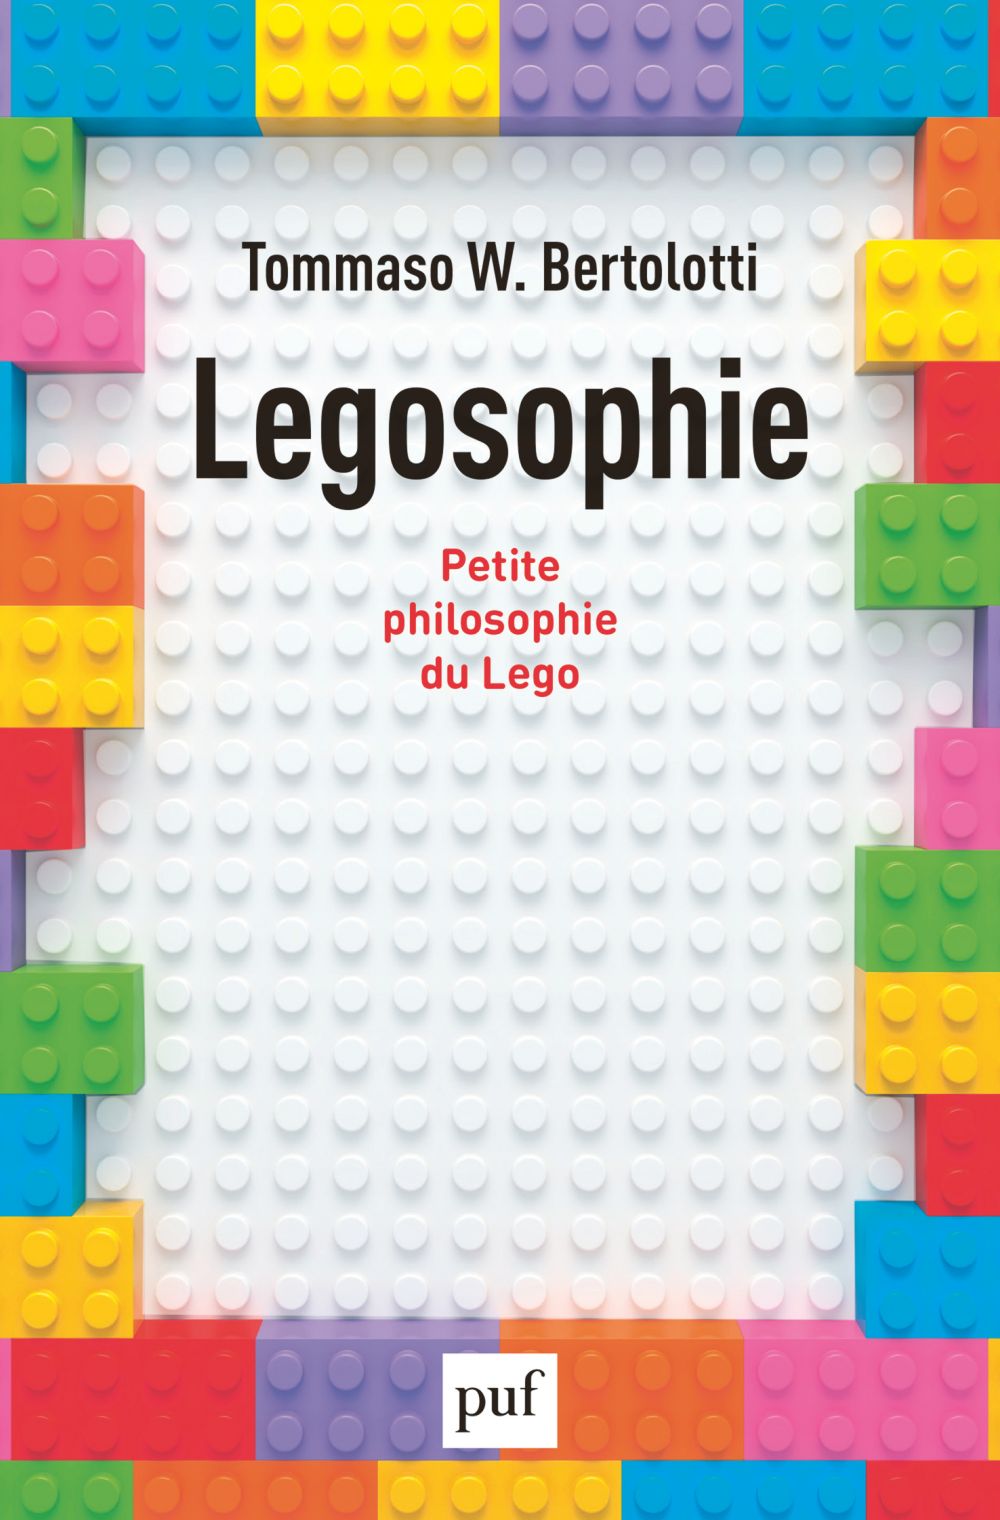 Legosophie - Petite philosophie du Lego